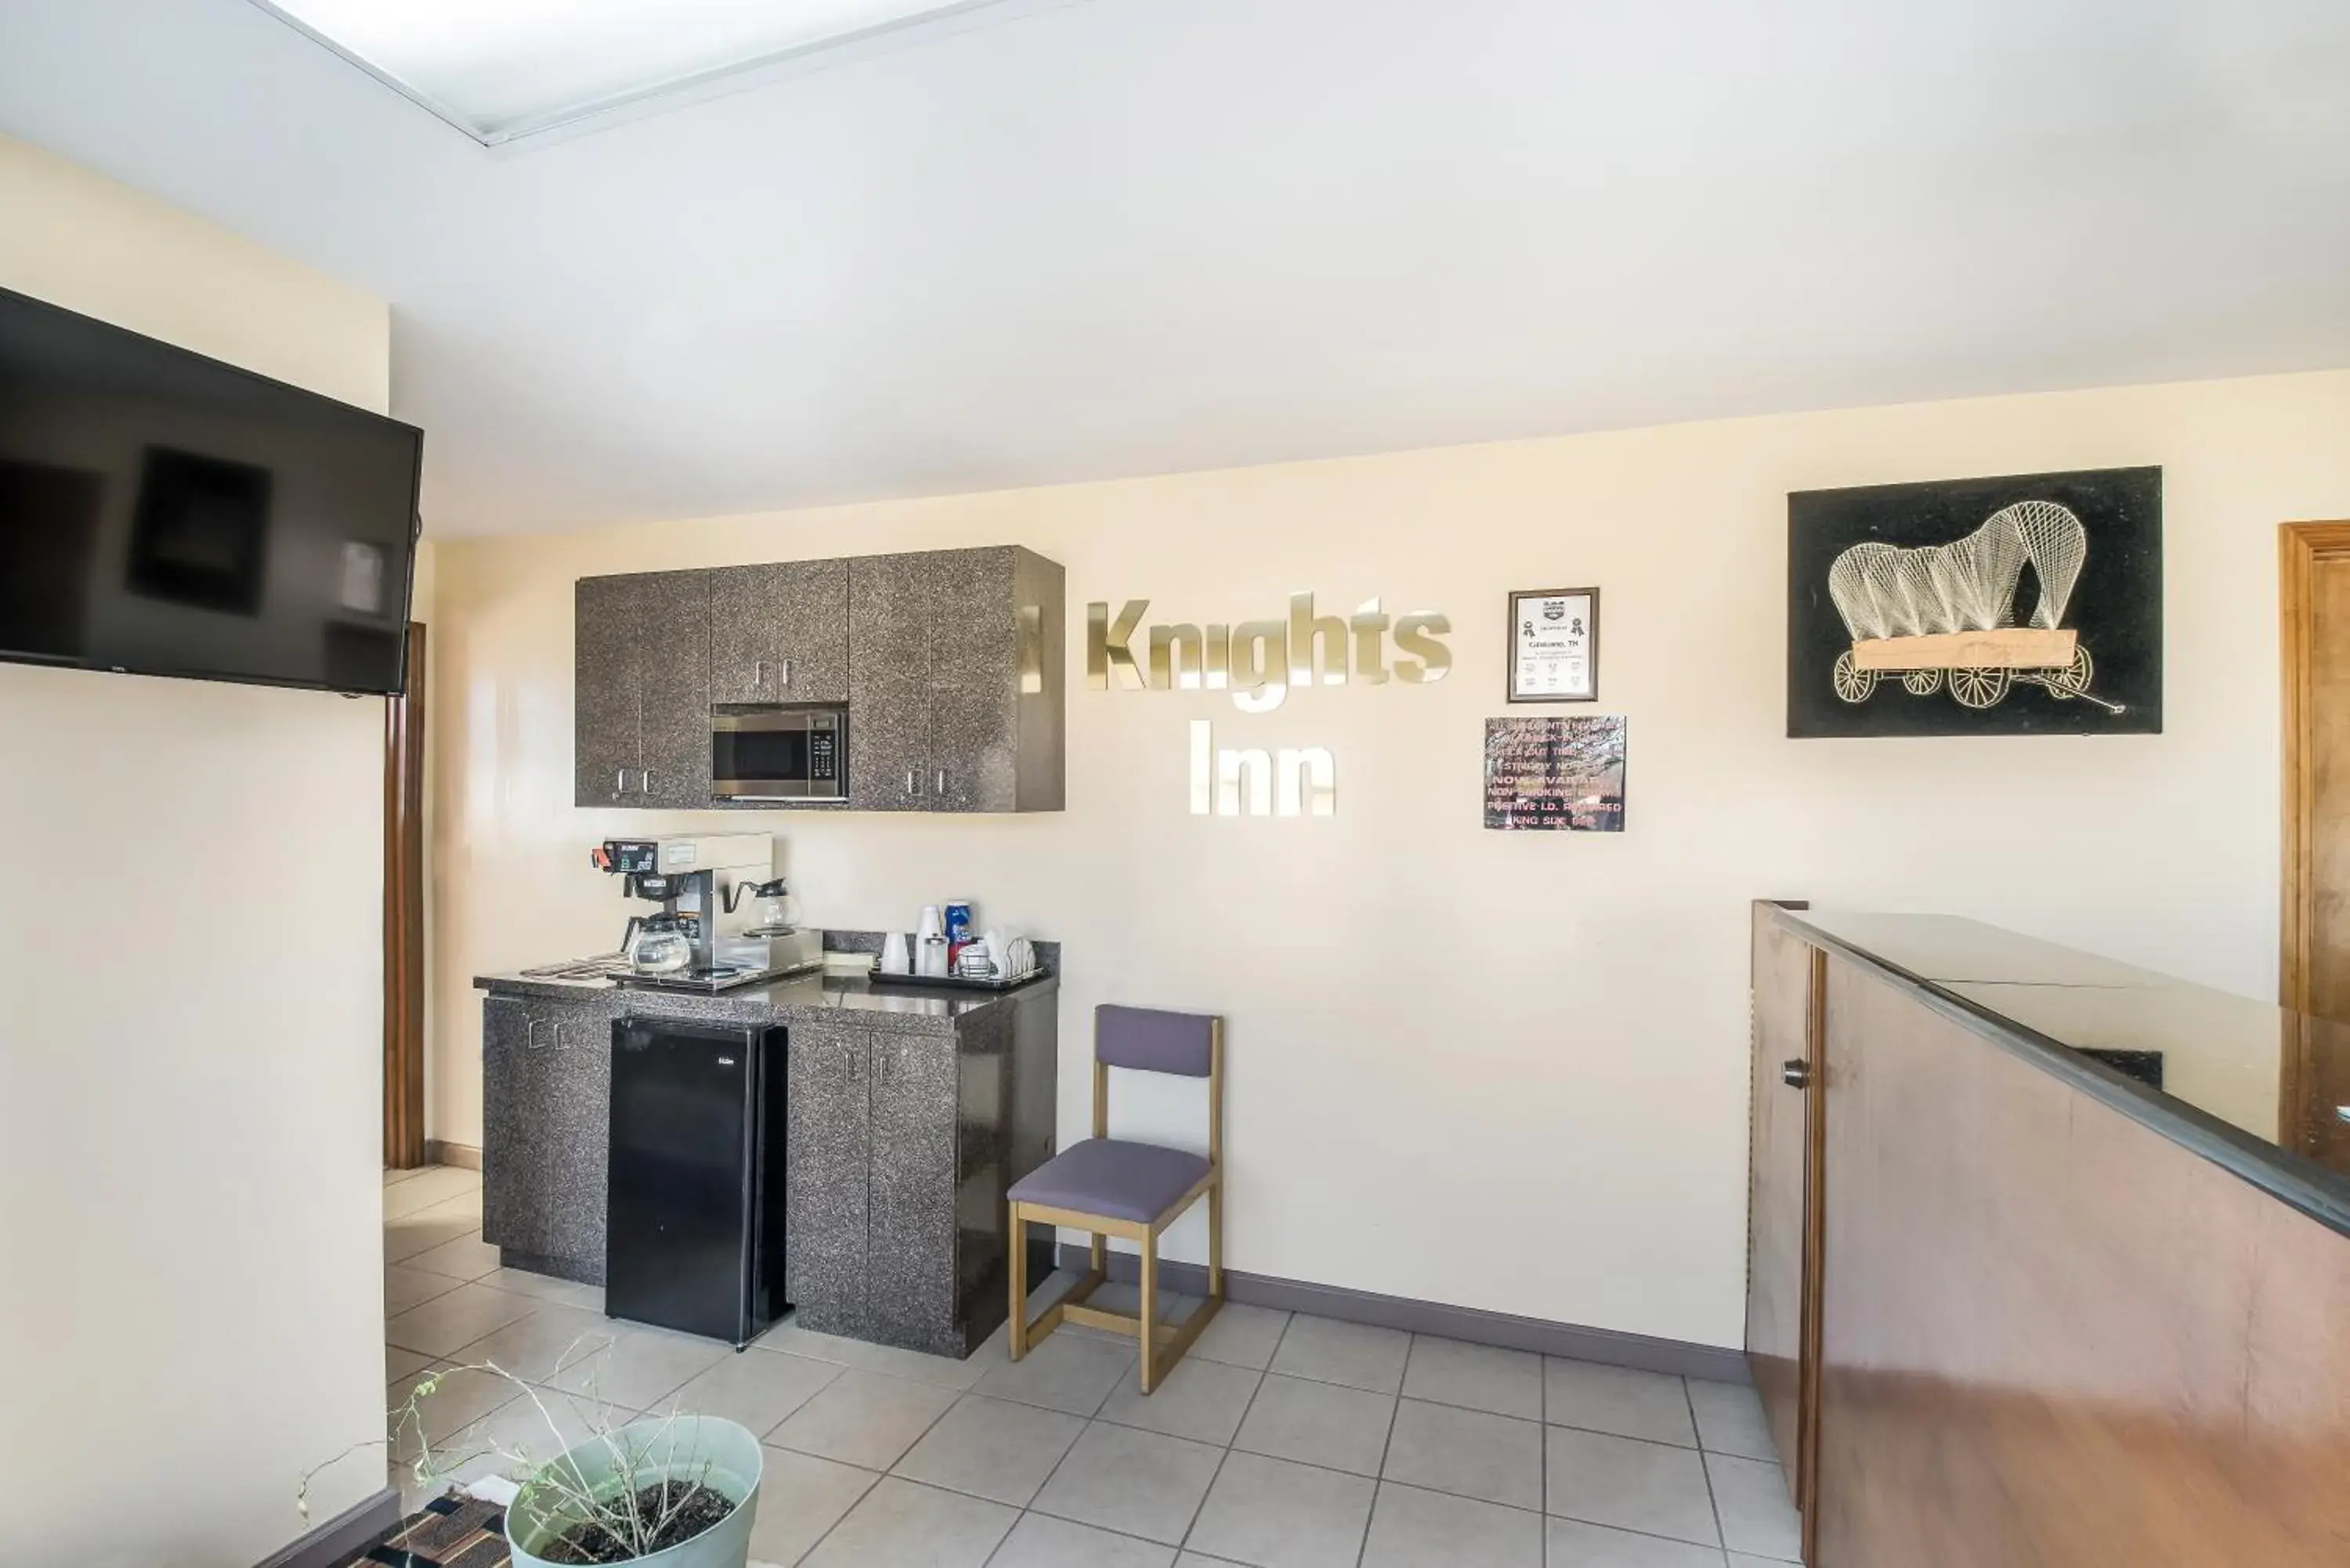 Kitchen/Kitchenette in Knights Inn - Cleveland